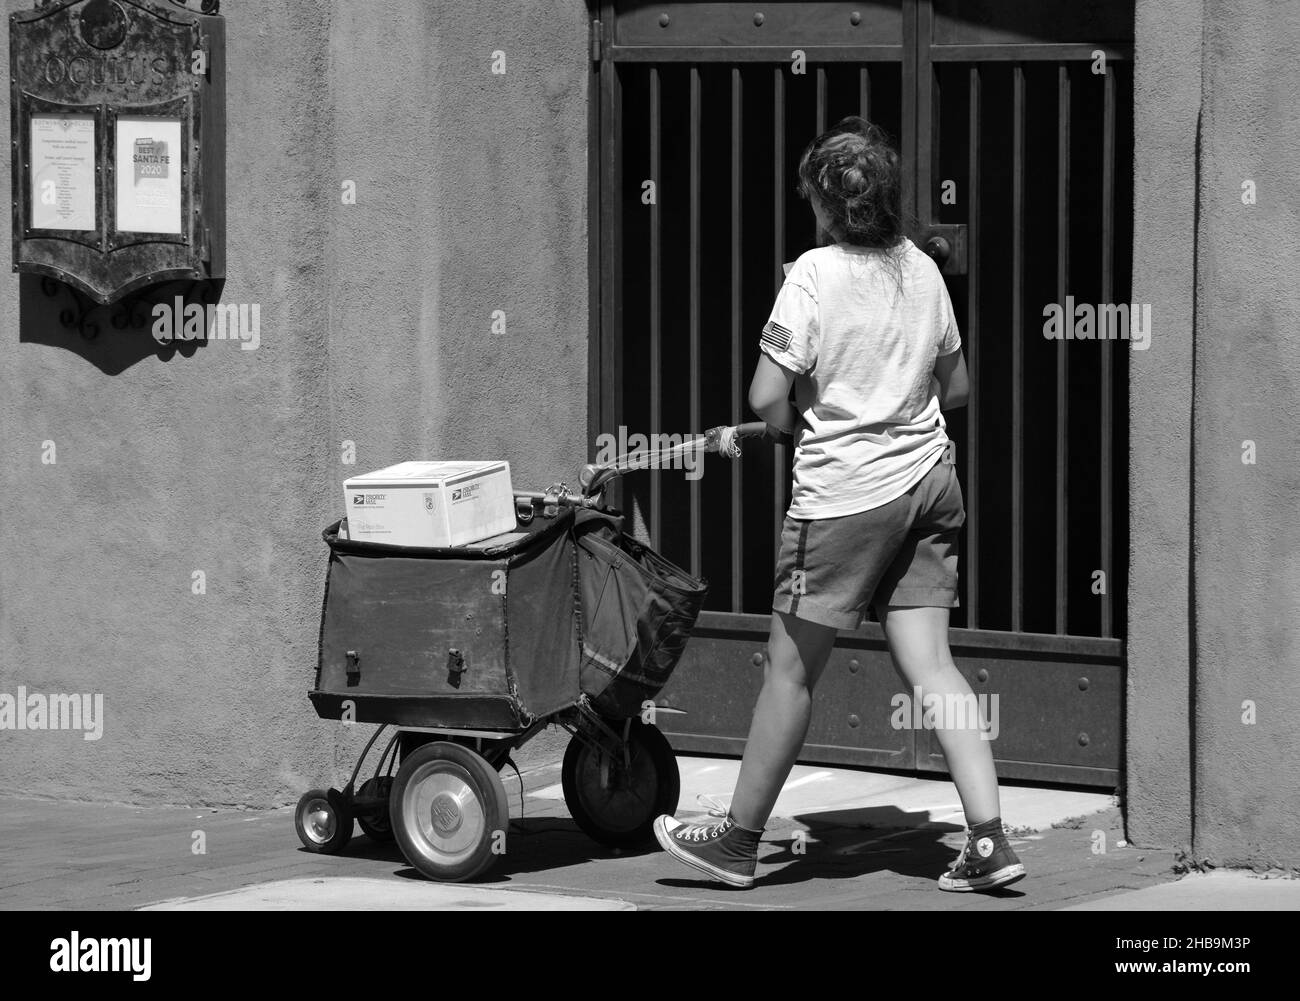 Une travailleuse postale livre le courrier et les colis dans le centre-ville de Santa Fe, au Nouveau-Mexique, à l'aide d'un chariot à roues. Banque D'Images